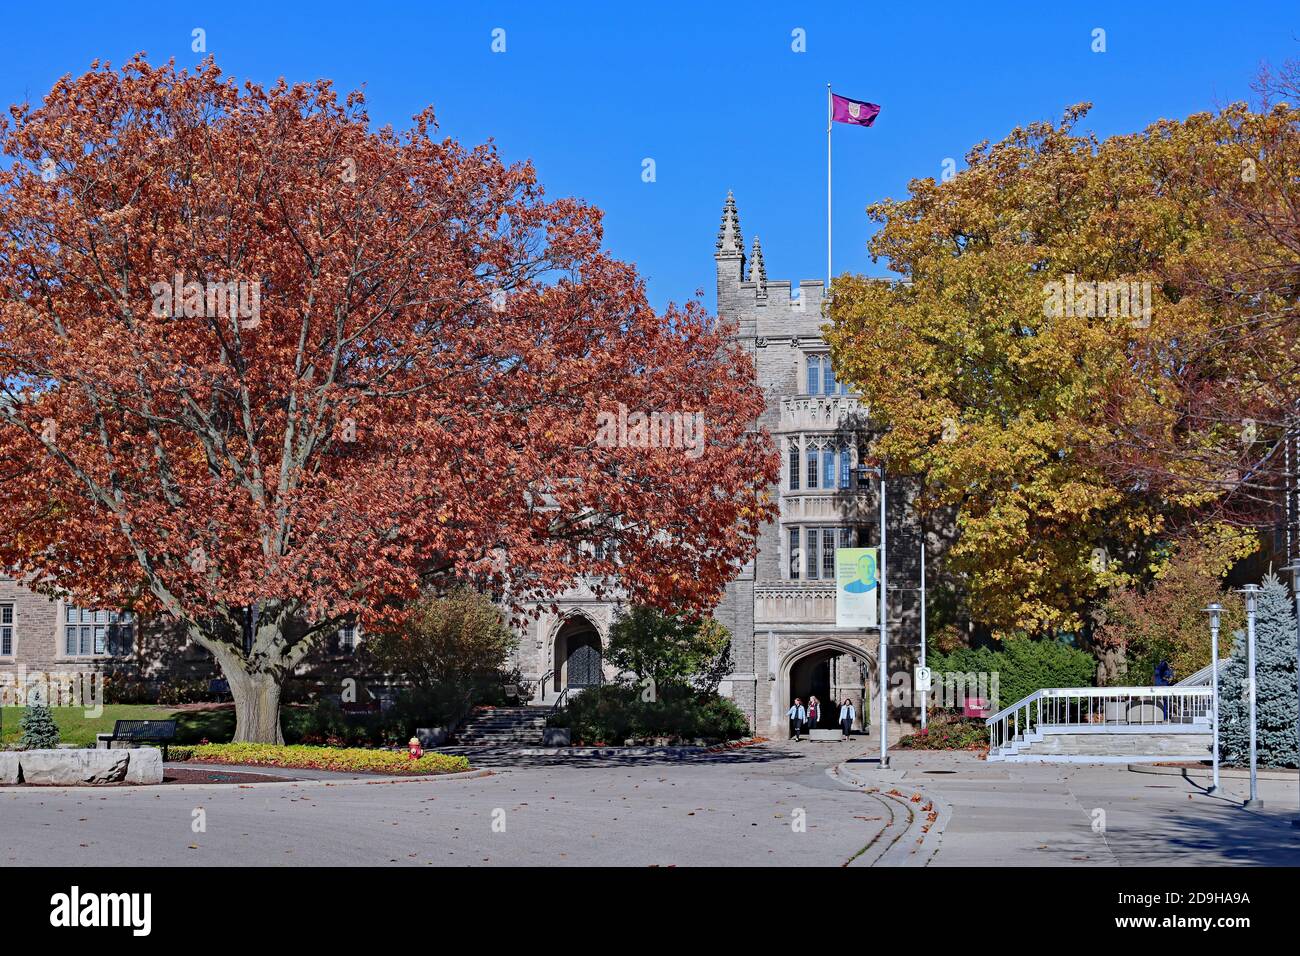 Hamilton, Ontario, Kanada - 4. November 2020: Auf dem Campus der McMaster University gibt es eine Reihe von Steingebäuden im gotischen Stil, die auf das frühe Par datiert sind Stockfoto